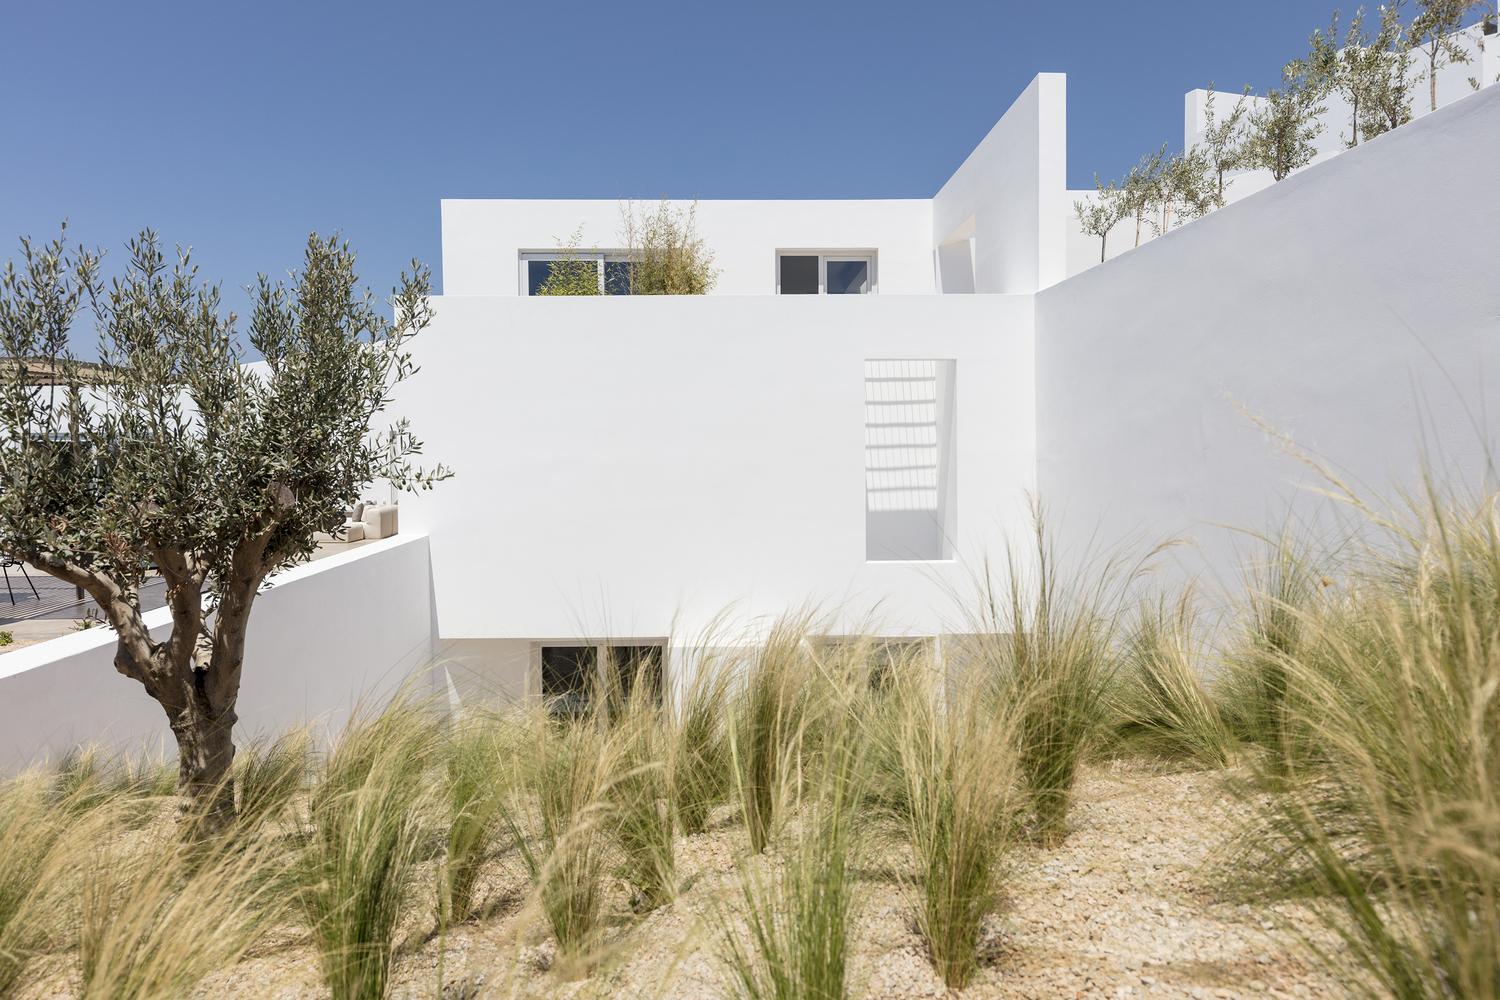 【希臘Santorini全新純白Villa】以極簡工藝品味 展現舒適的夏日島嶼生活